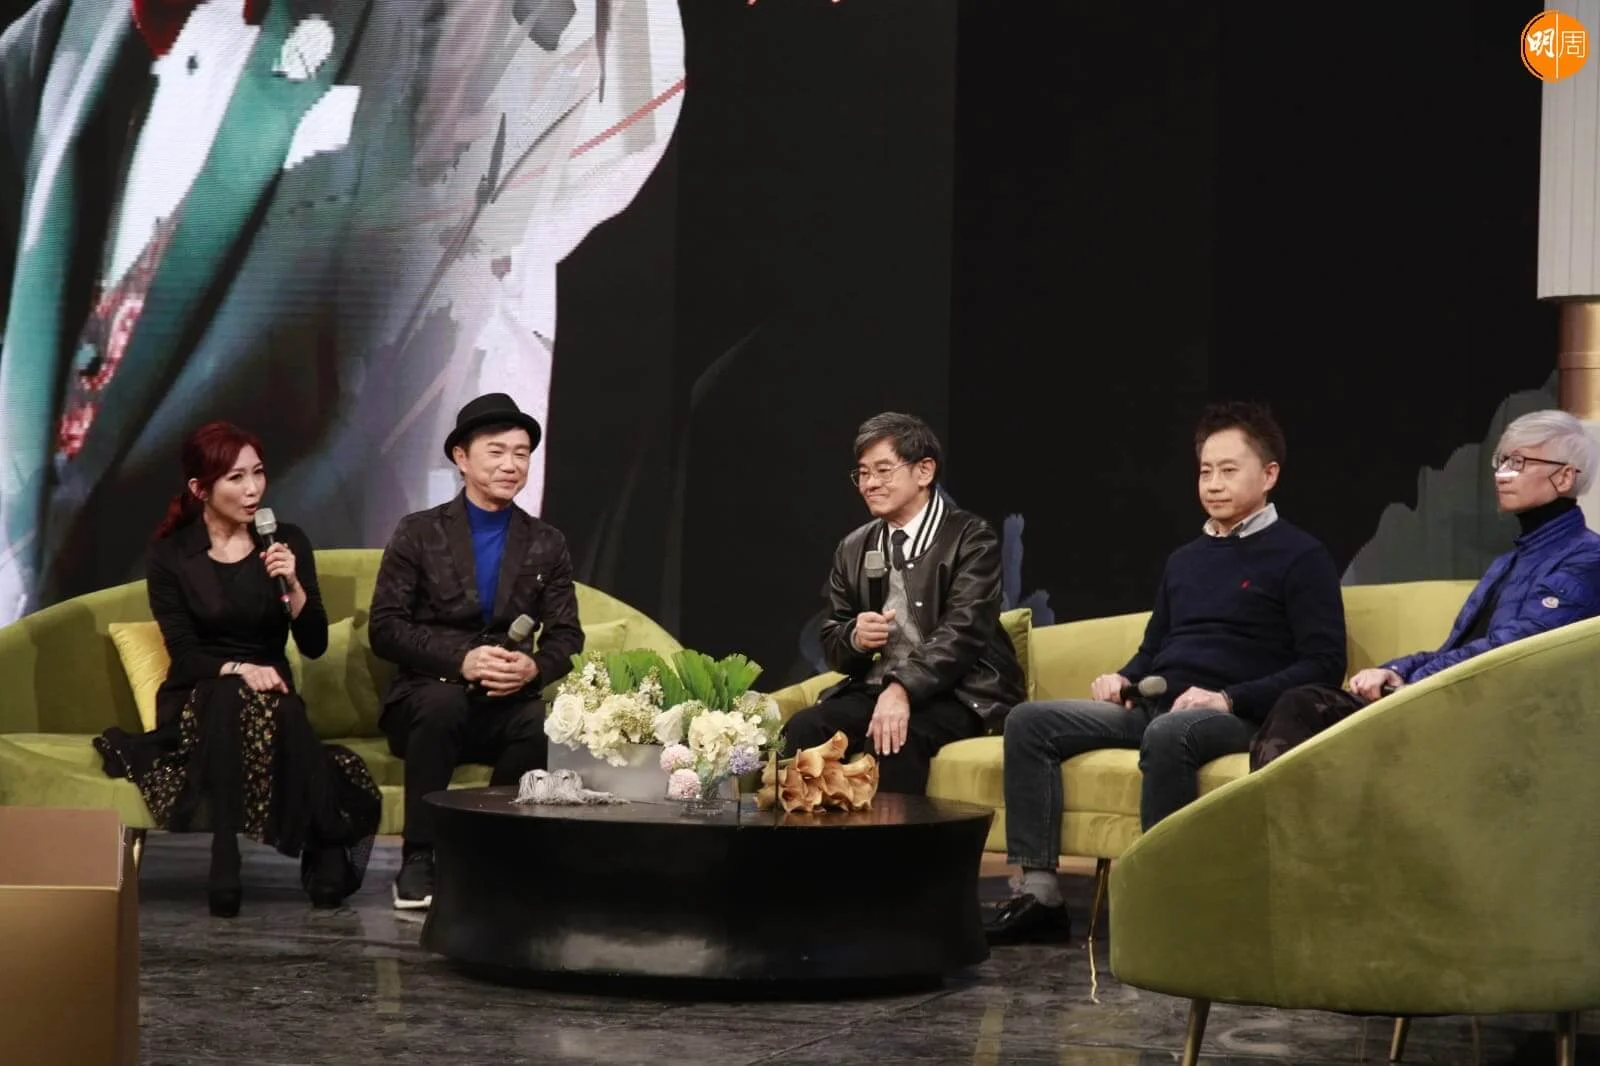 TVB今晚特別為顧嘉煇製作《忘不了的殿堂大師 顧嘉煇先生》特輯。